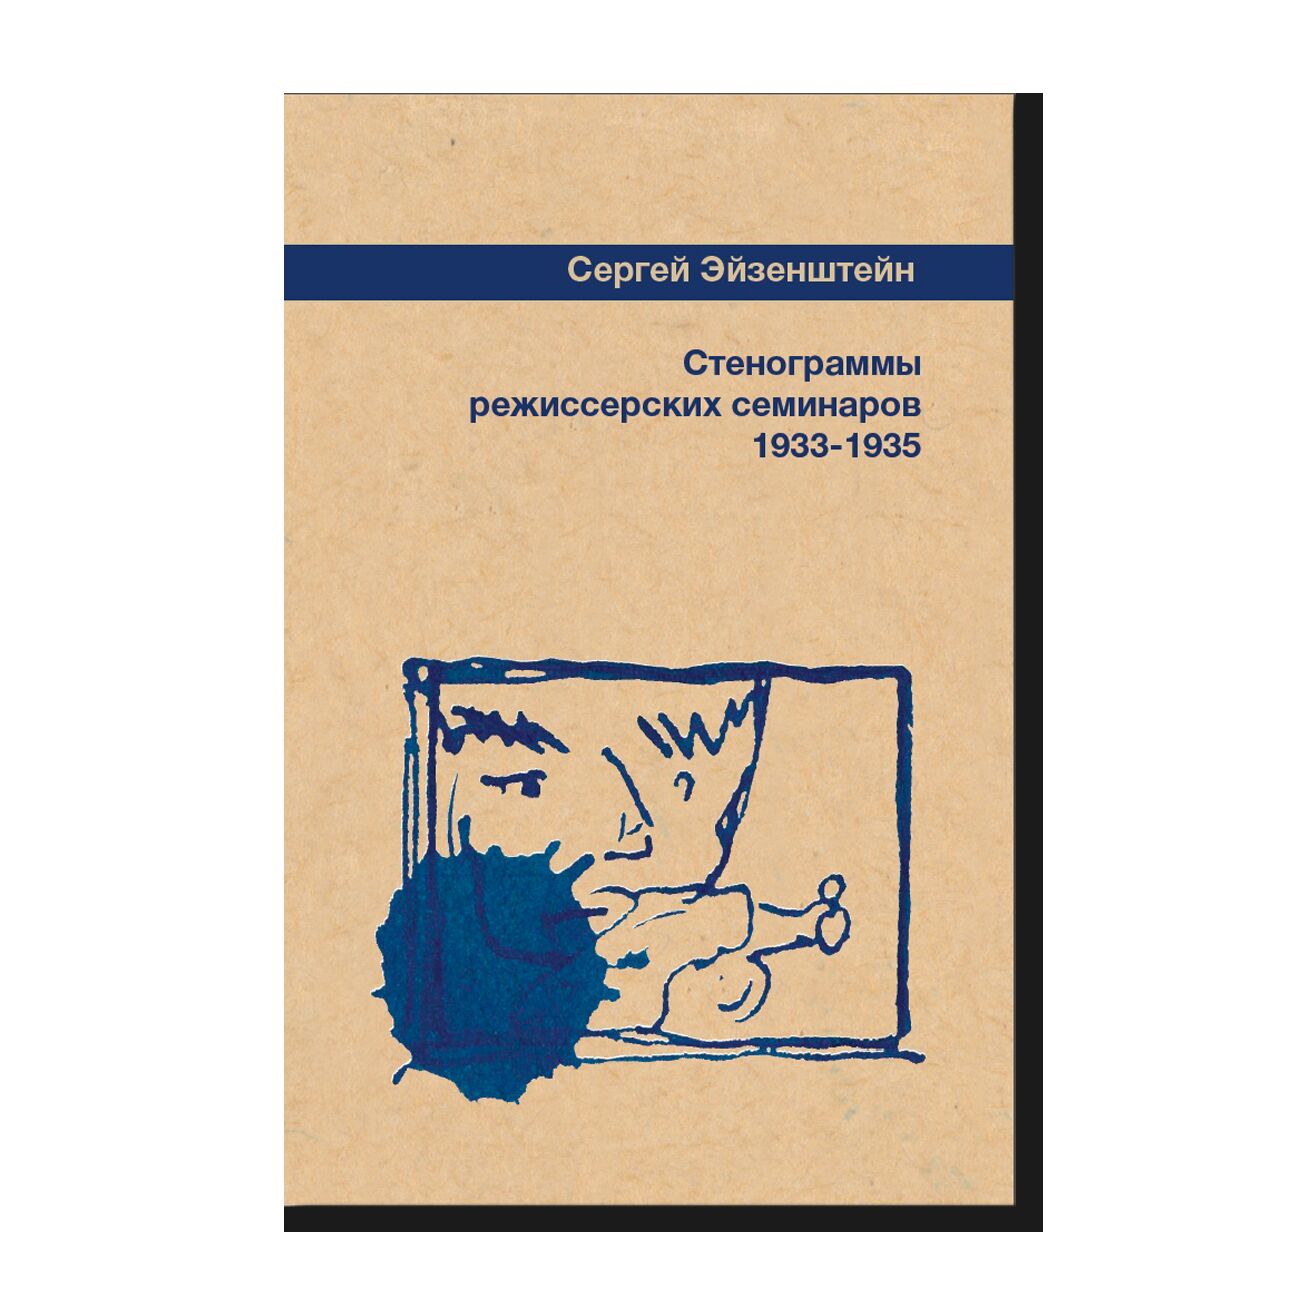 Стенограммы режиссерских семинаров 1933-1935